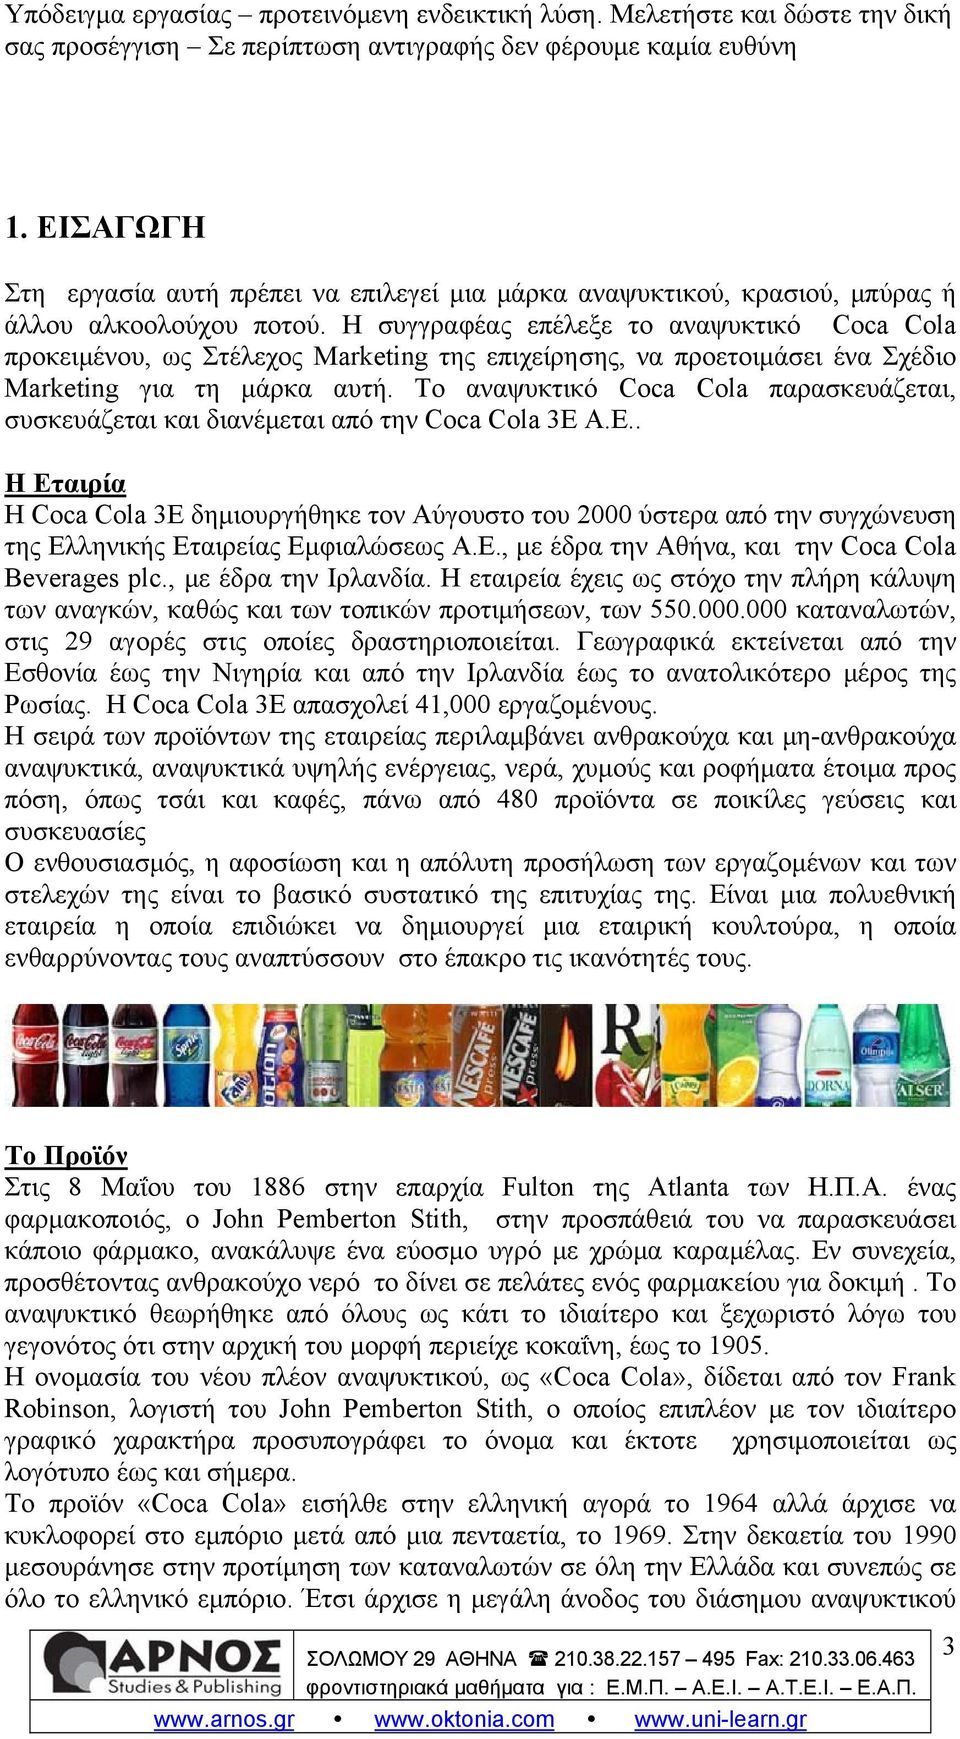 Το αναψυκτικό Coca Cola παρασκευάζεται, συσκευάζεται και διανέμεται από την Coca Cola 3E Α.Ε.